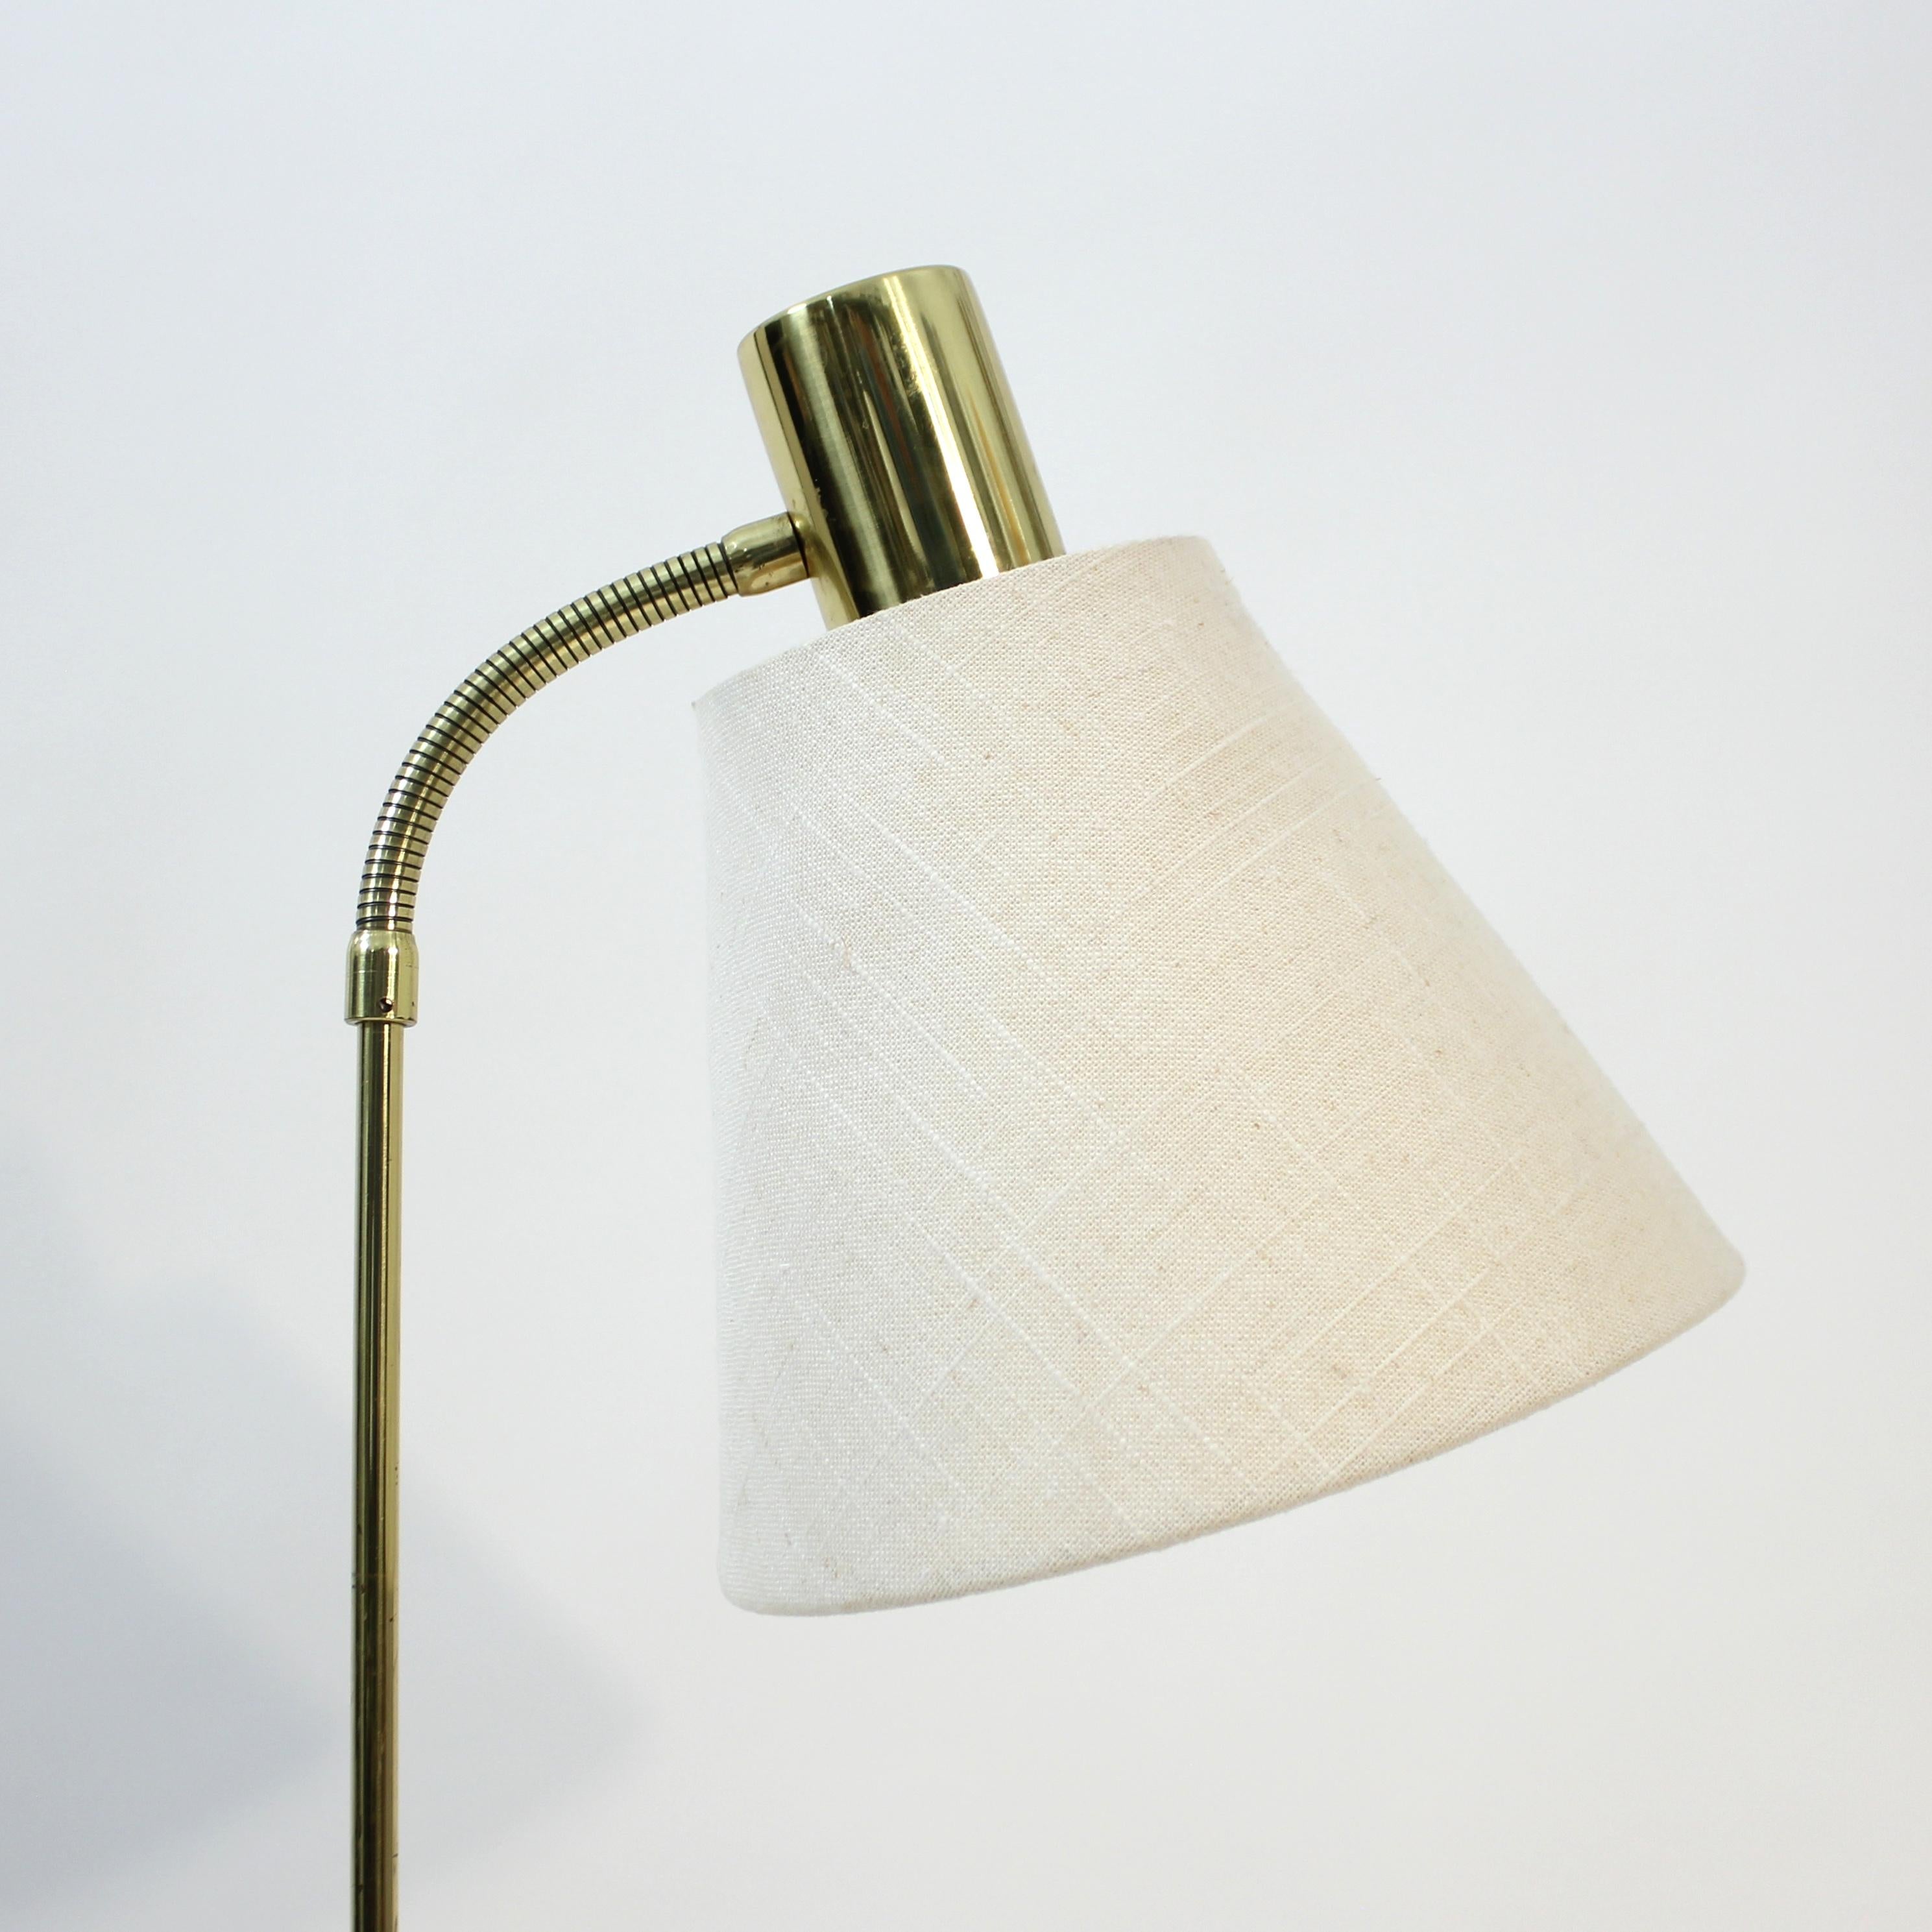 Swedish height adjustable floor lamp by MAE (Möller Armatur Eskilstuna), 1960s For Sale 5